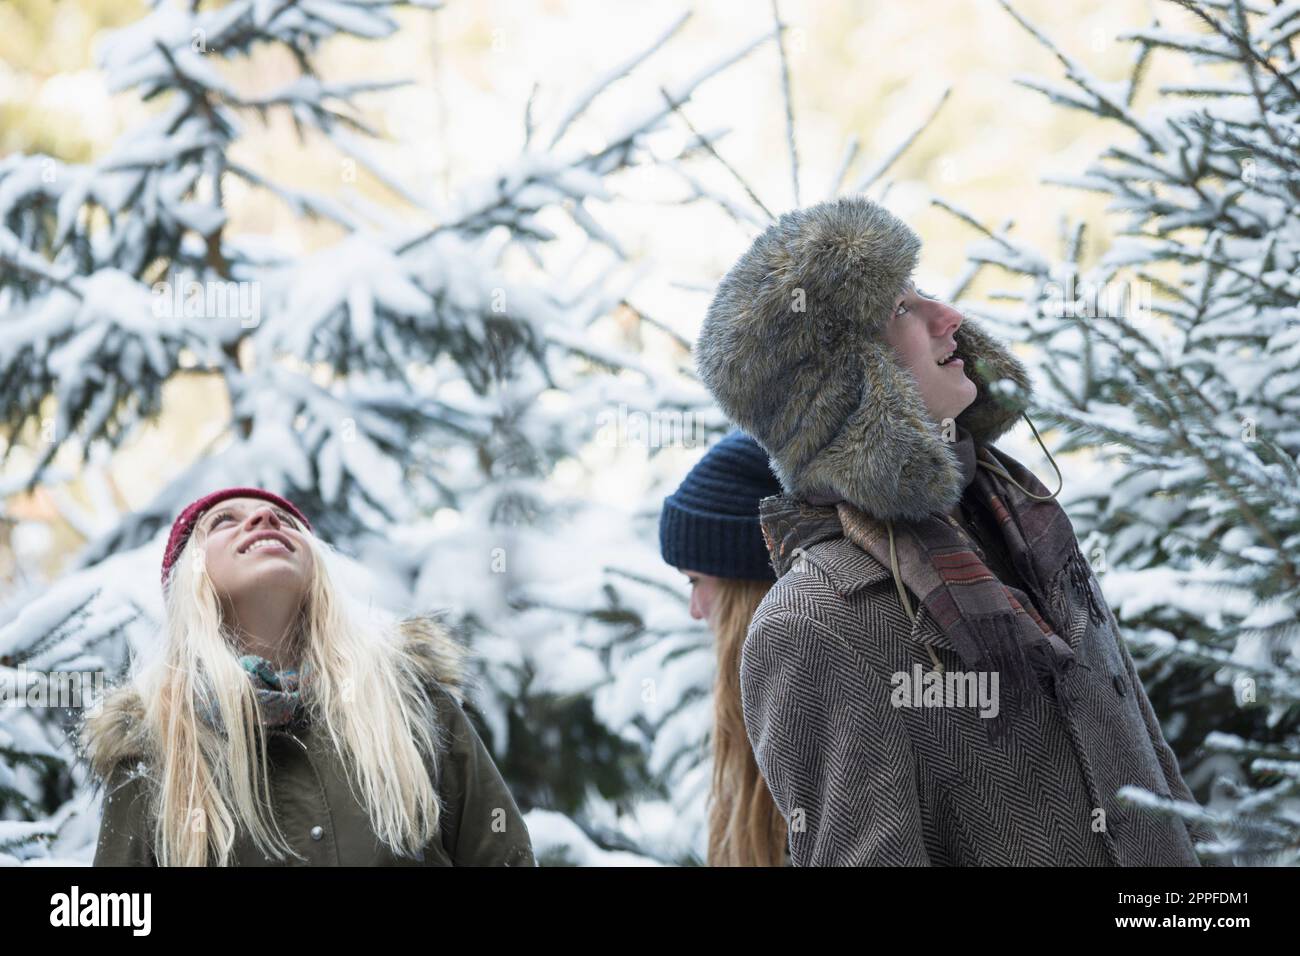 Freunde im verschneiten Wald suchen einen weihnachtsbaum, Bayern, Deutschland Stockfoto